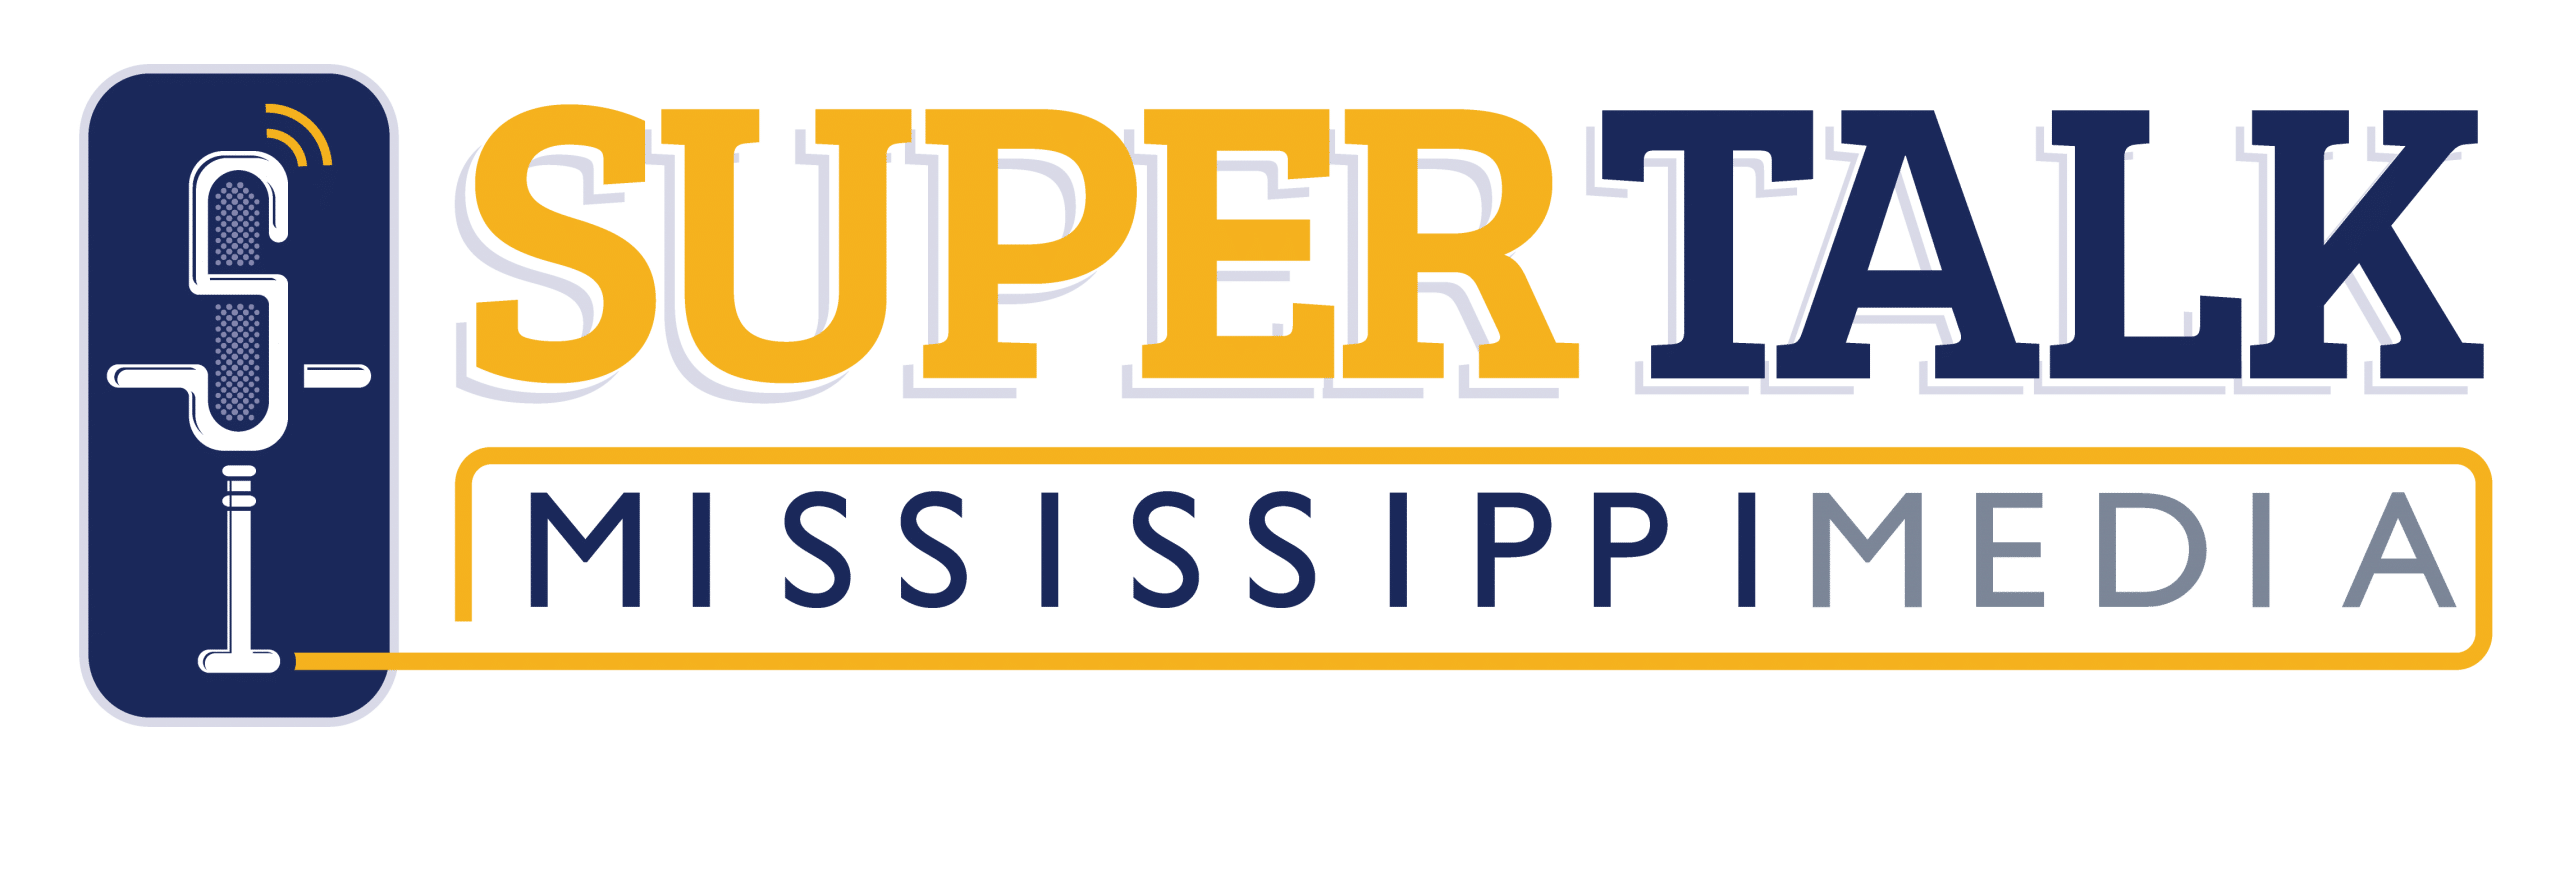 Sponsor Super Talk Mississippi